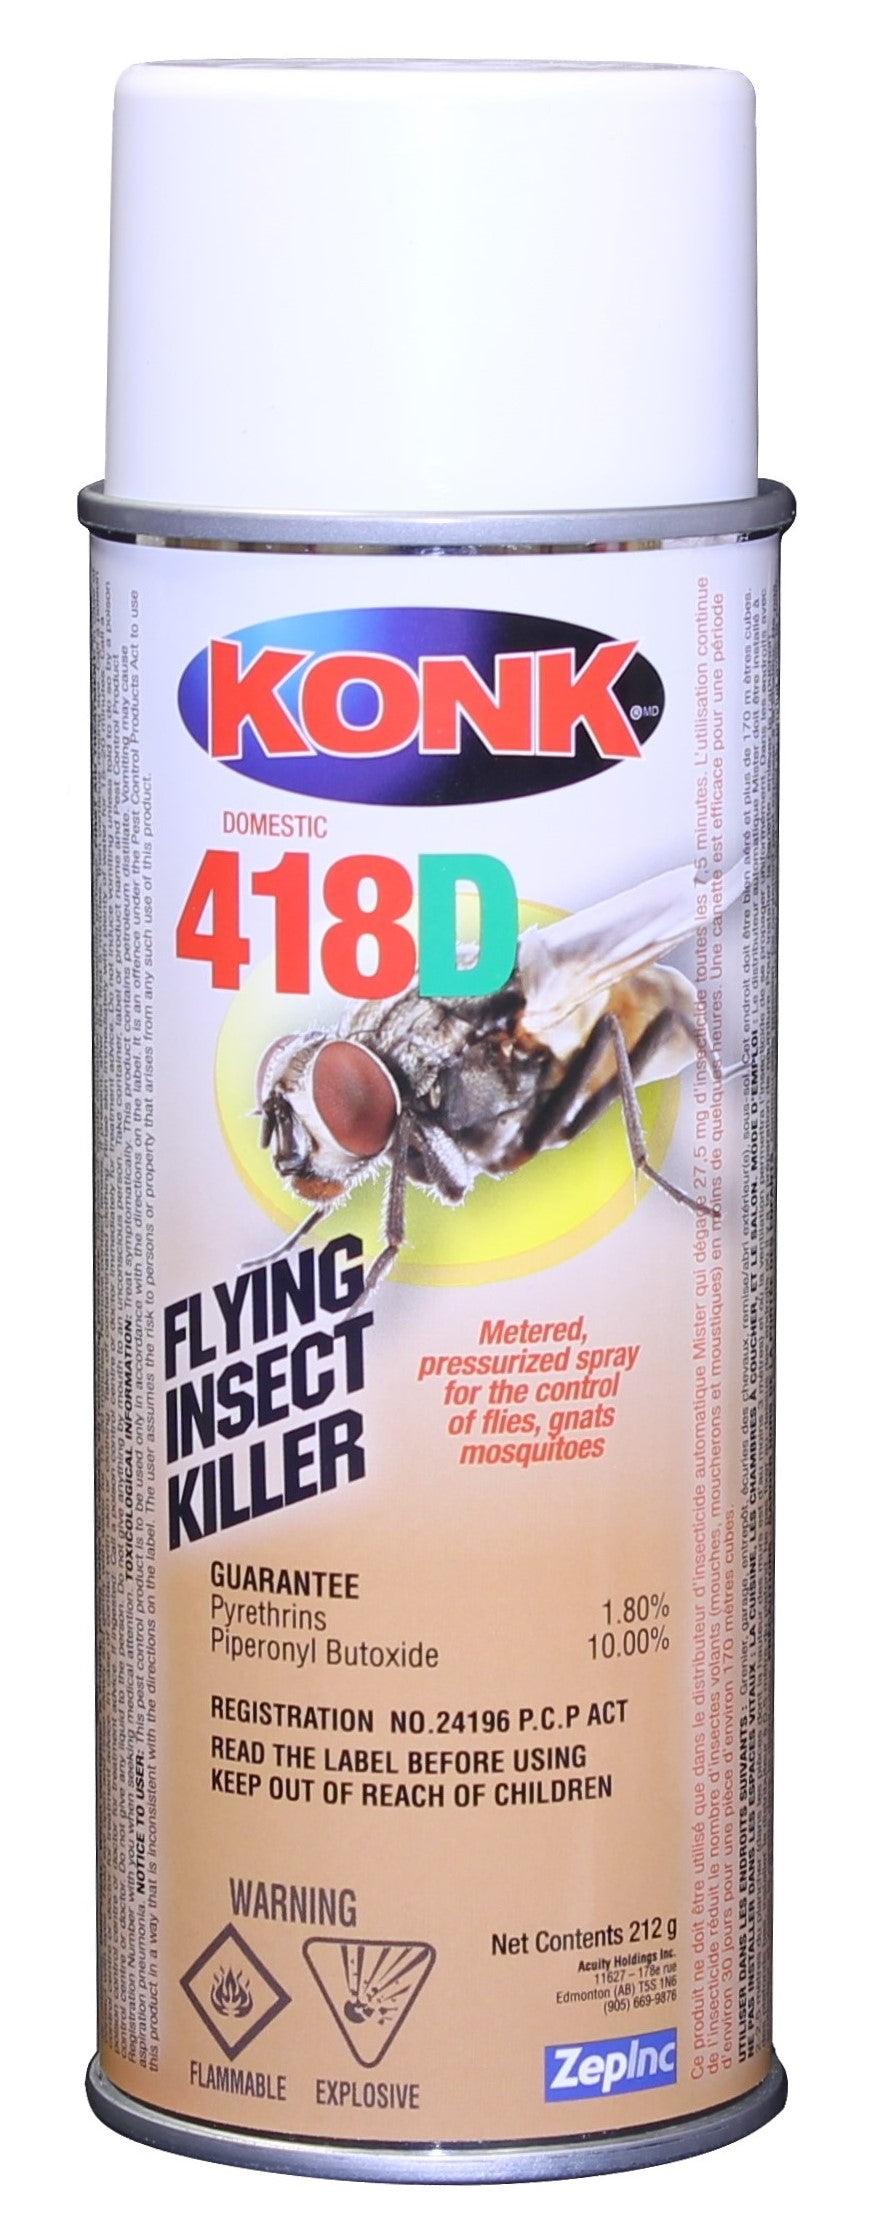 Konk 418D Flying Insect Killer 212g 12/cs